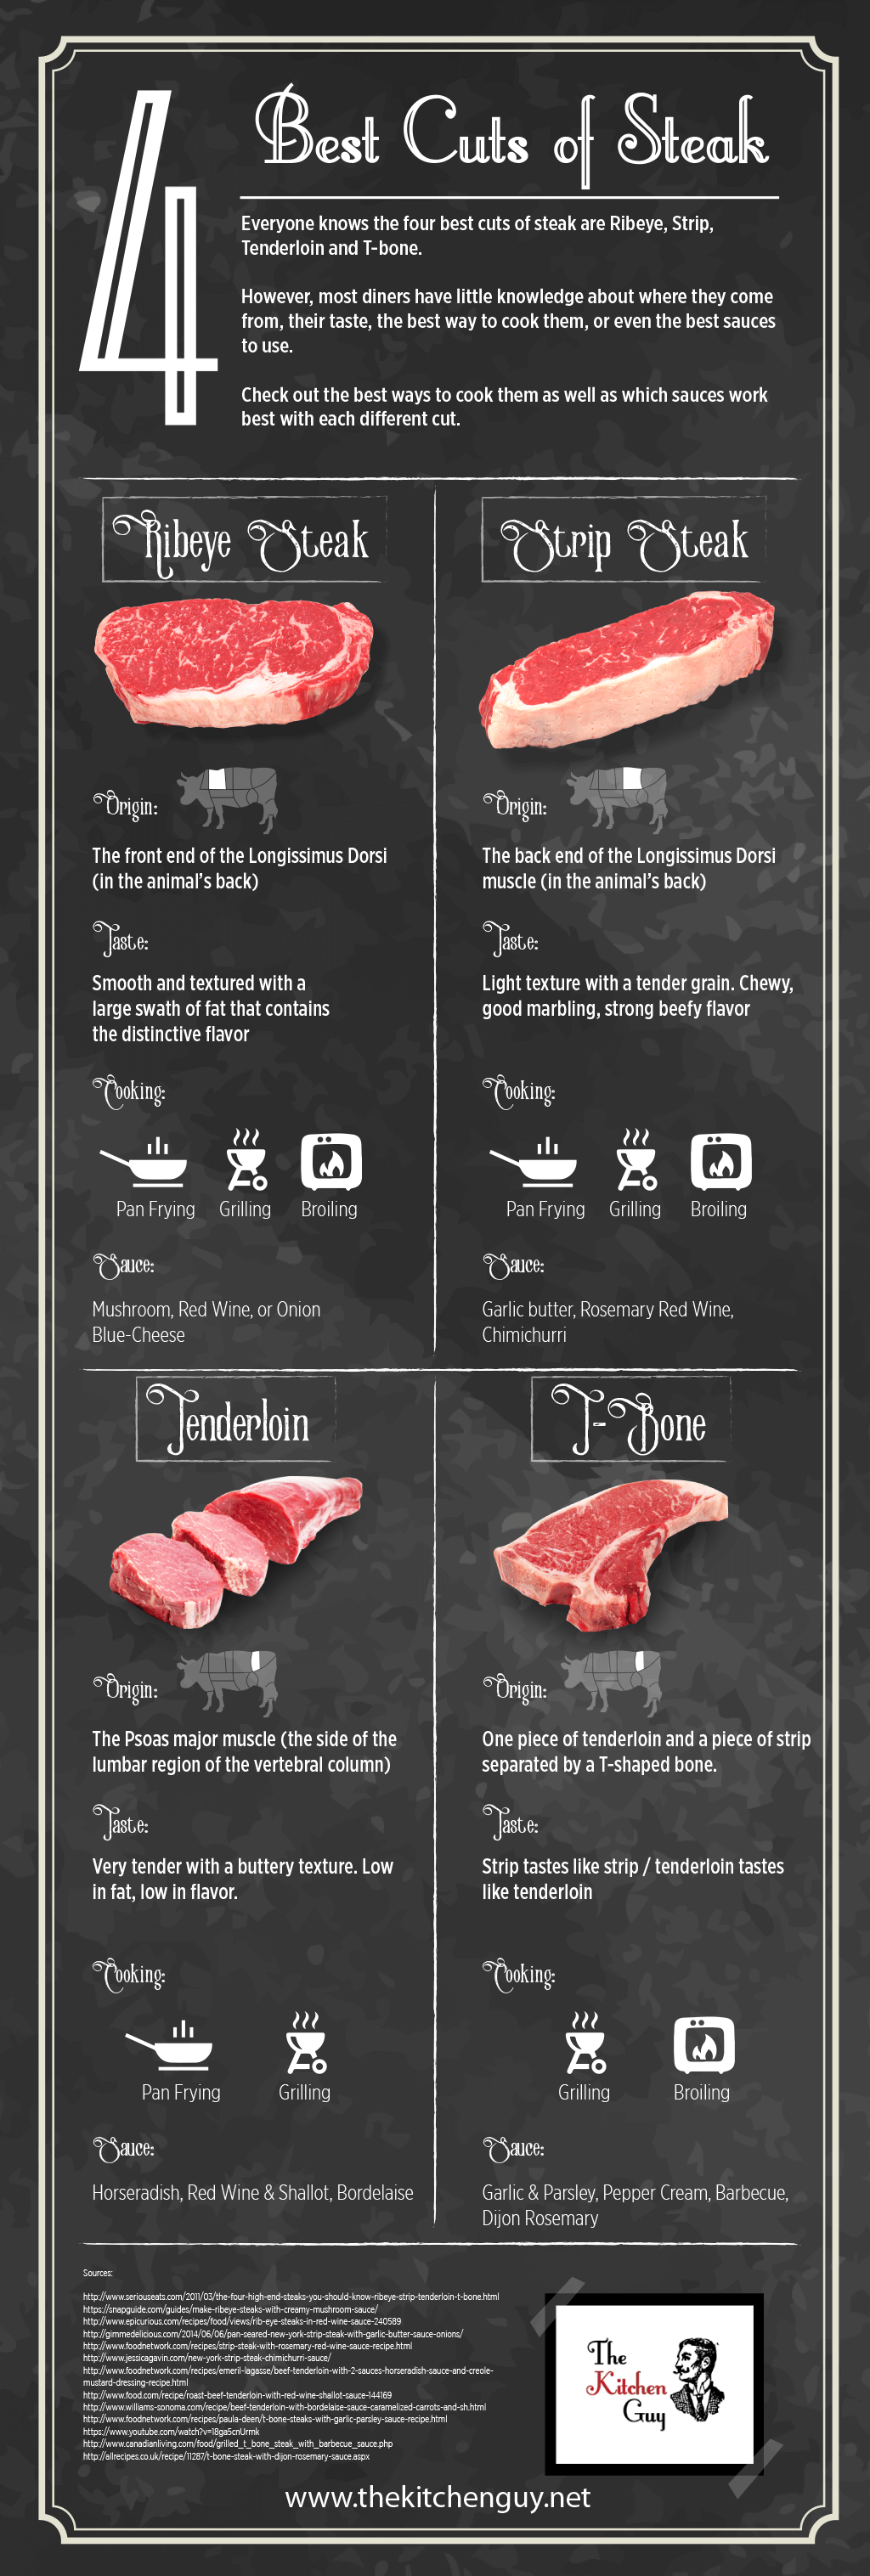 Best-Cuts-of-Steak